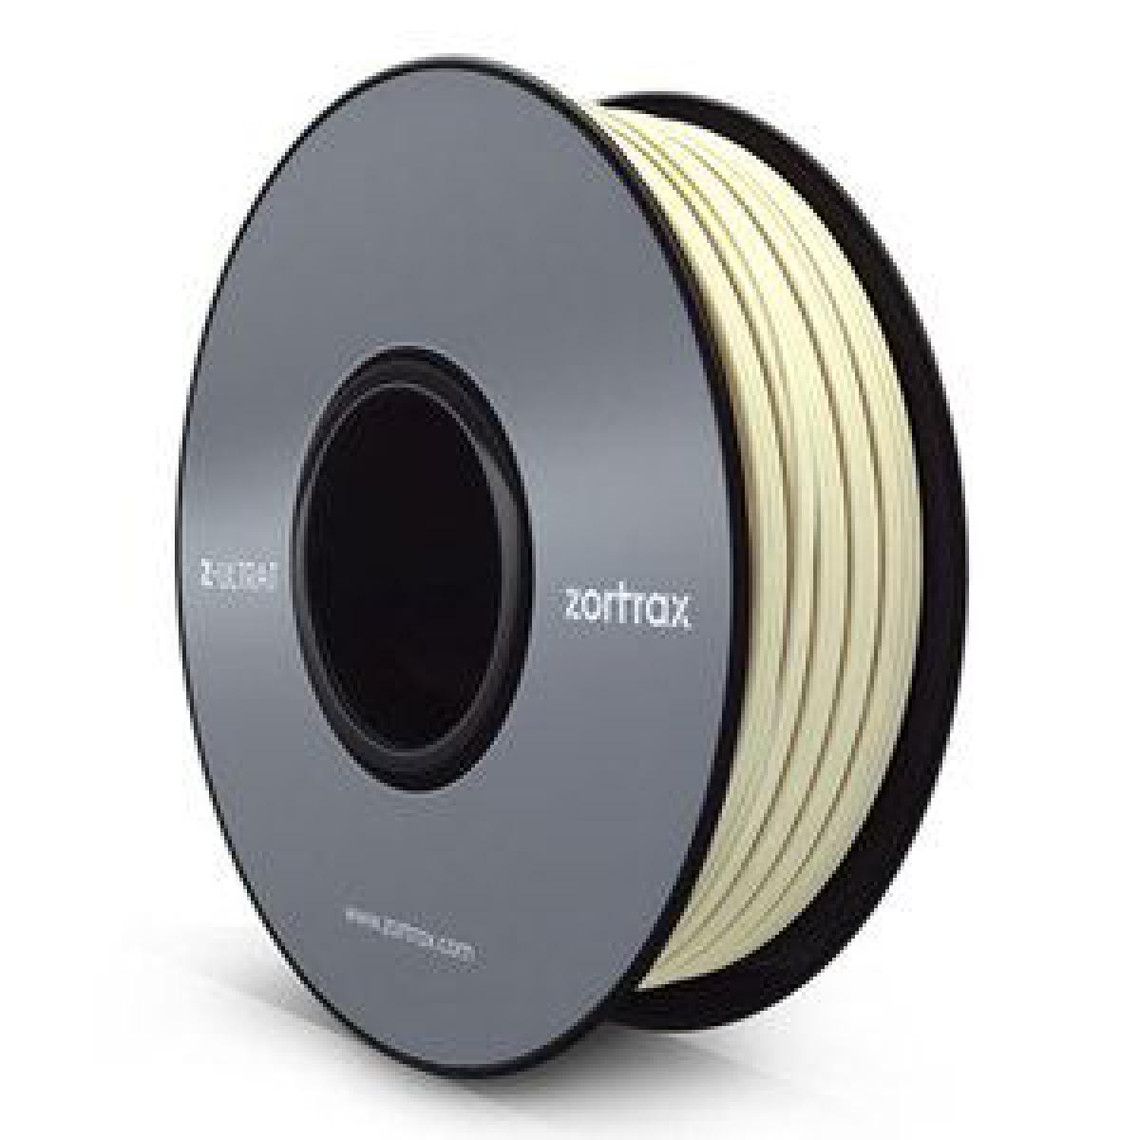 Inconnu Zortrax 5904730747127 Z-ULTRAT Filament pour Imprimante 3D, Ivoire